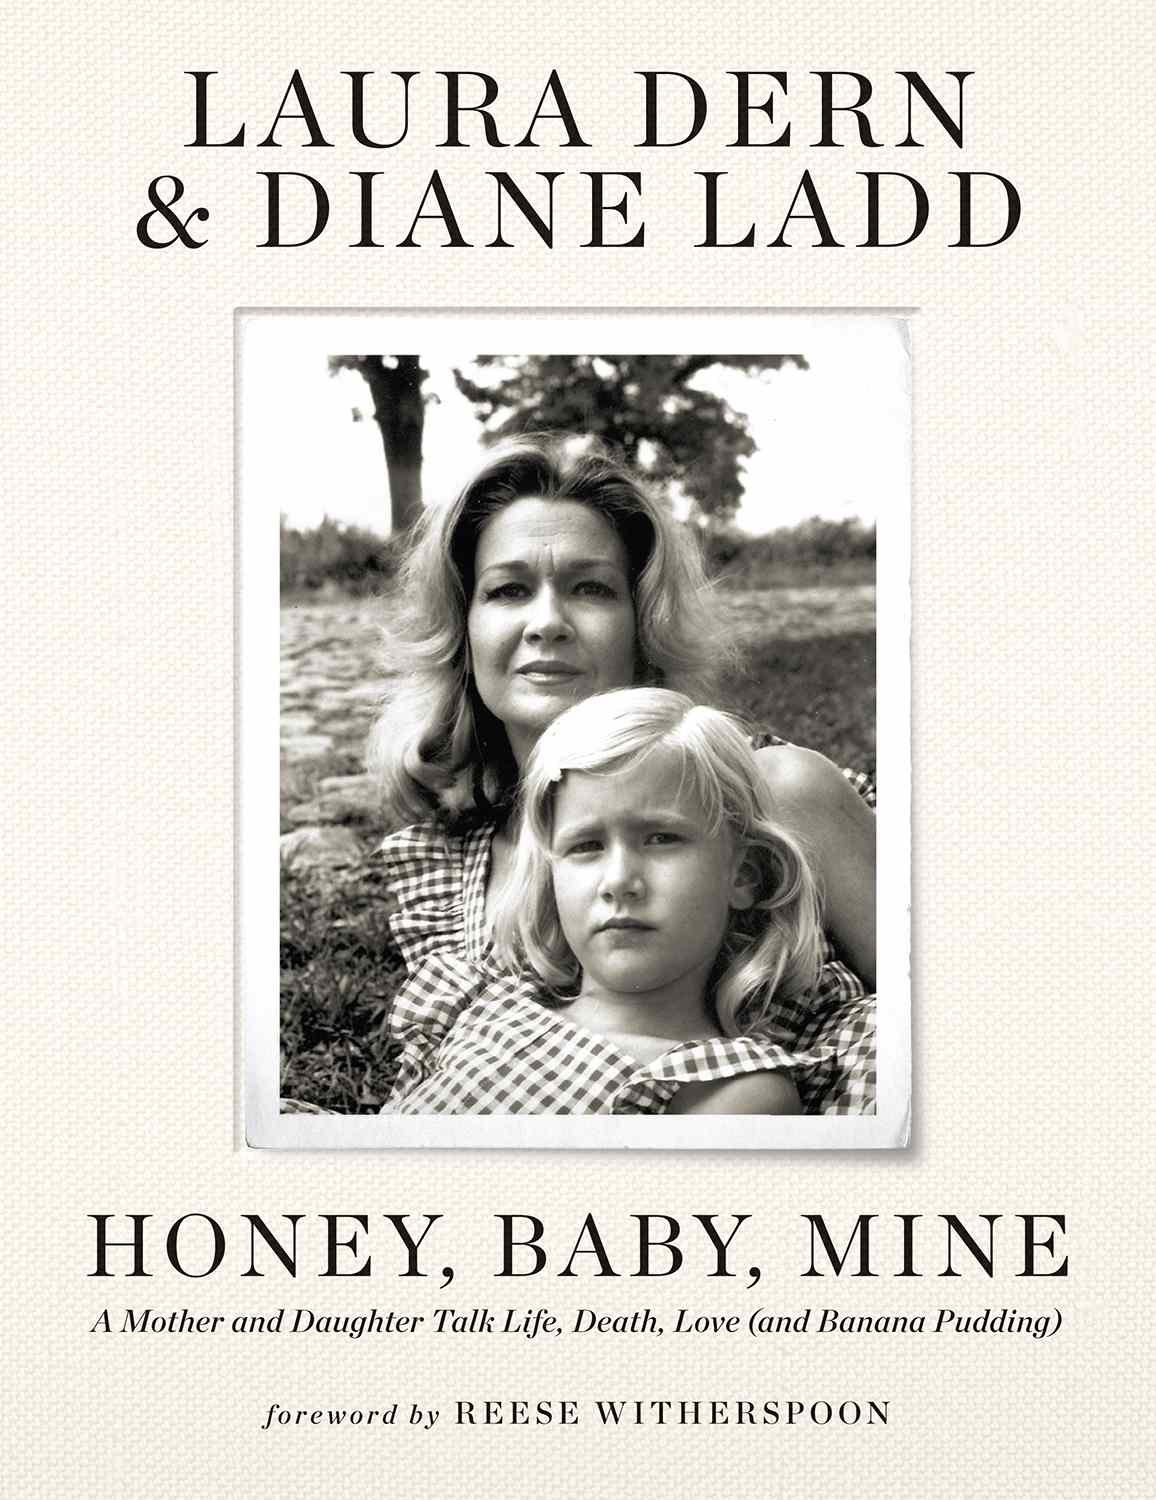 Laura Dern e la madre Diane Ladd rivelano la copertina del nuovo libro "Honey, Baby, Mine"